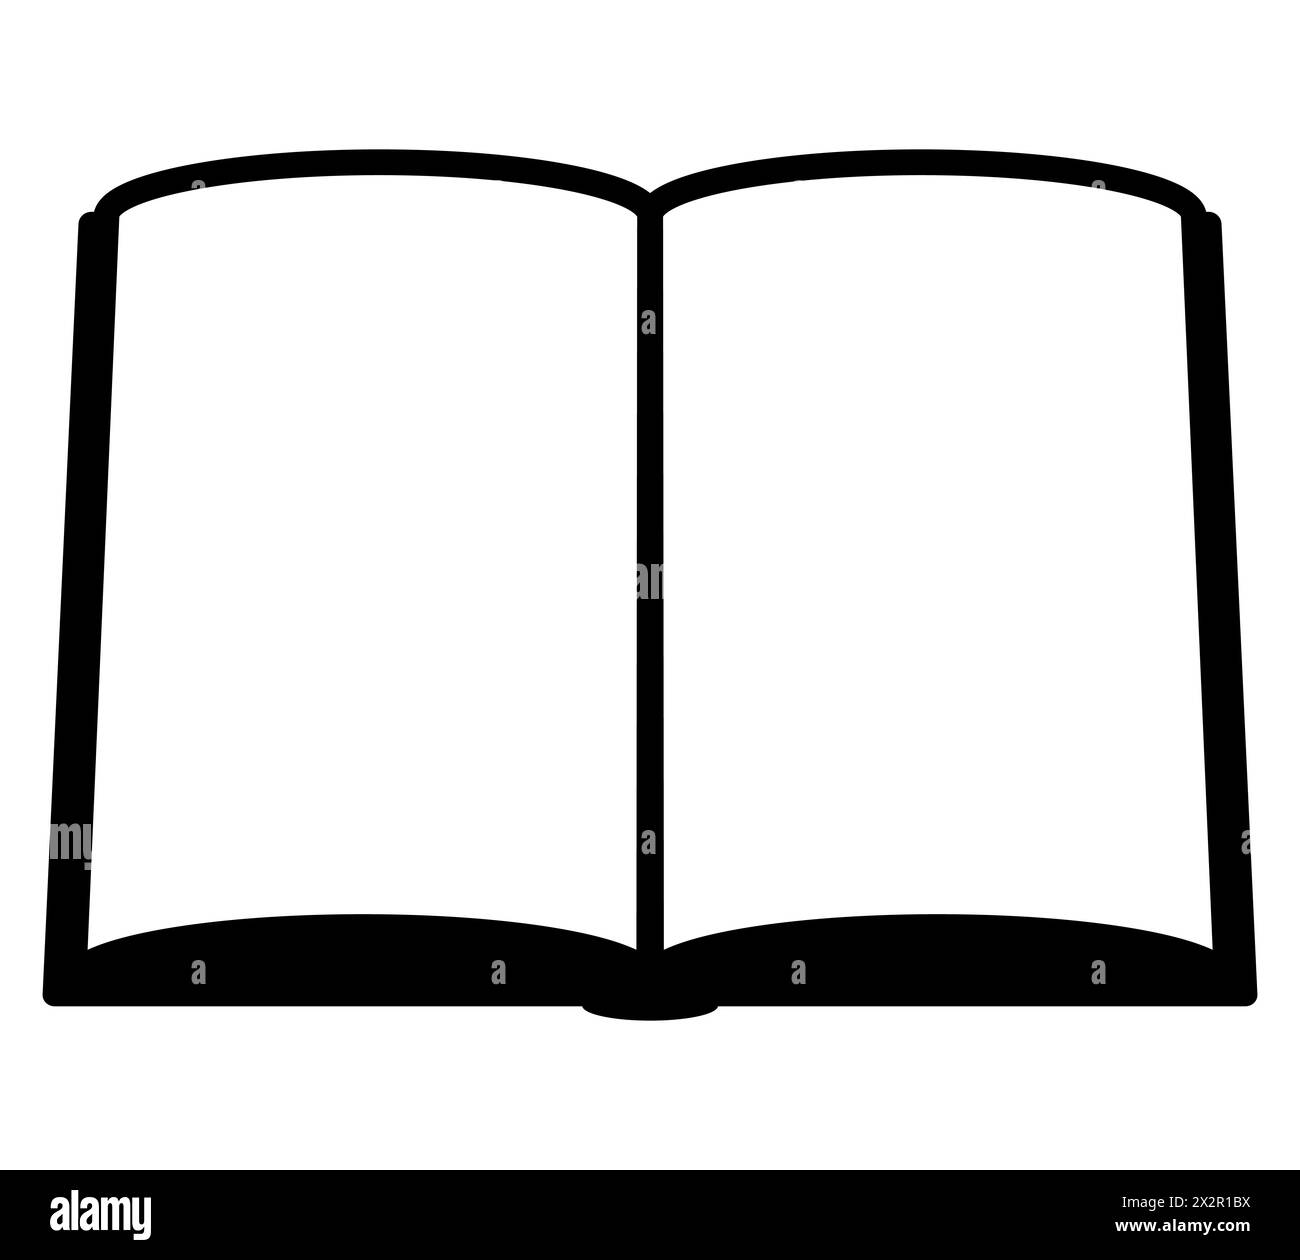 Buch - Schwarzweiß einfaches Symbol Symbol des offenen Buches, Vektorillustration isoliert auf weiß Stock Vektor